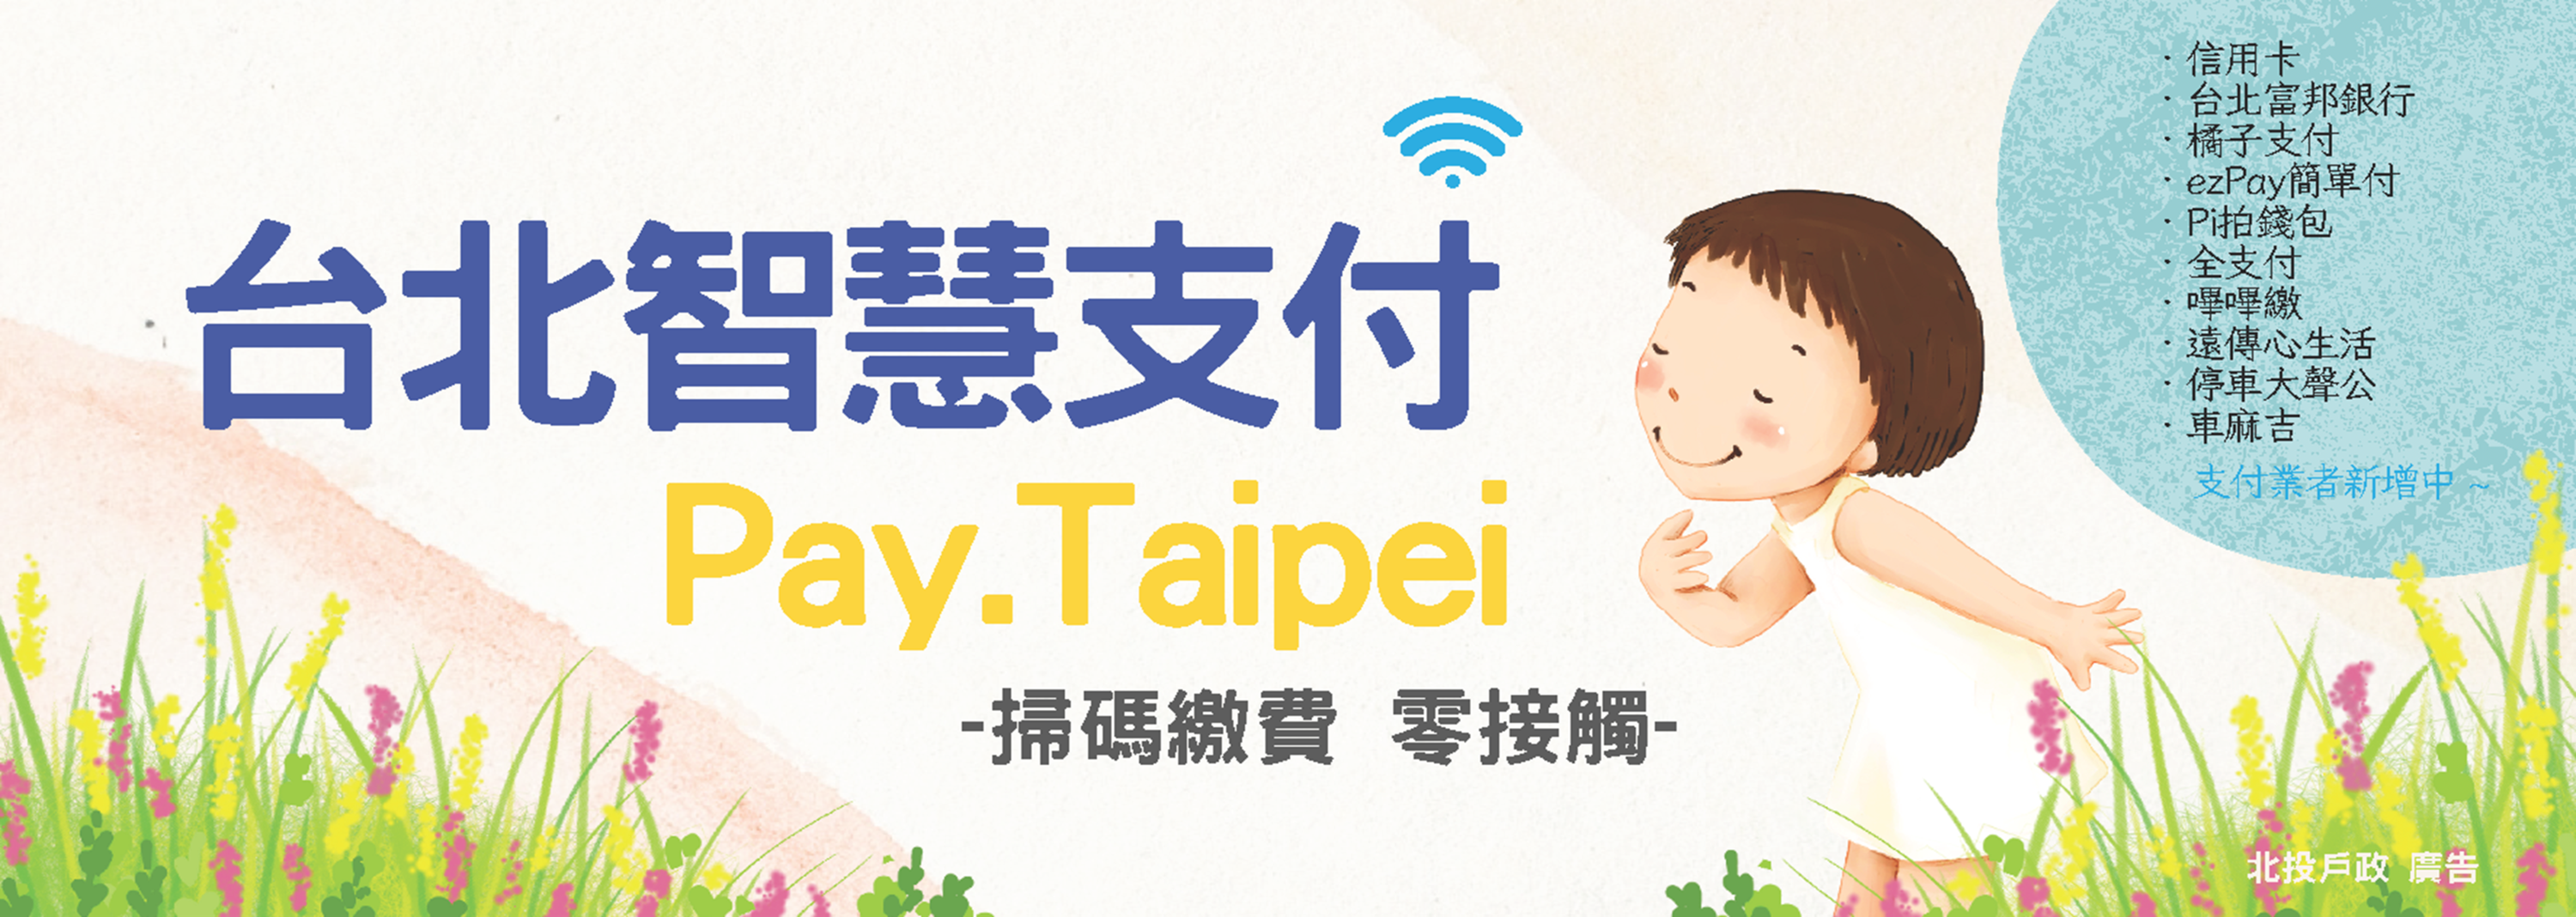 台北智慧支付Pay.Taipei提供繳納戶政規費及罰鍰服務